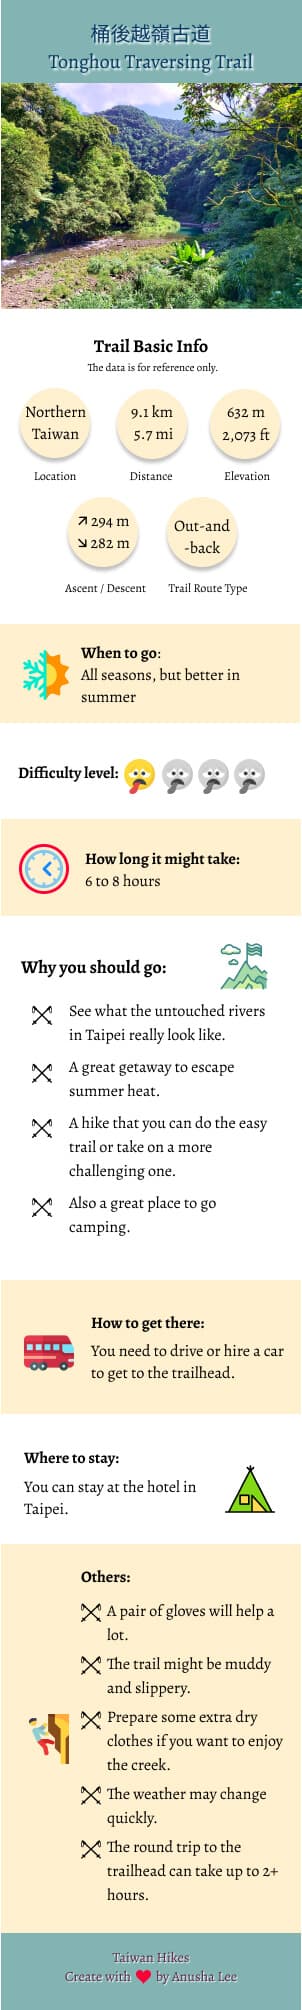 Tonghou Traversing Trail infographic